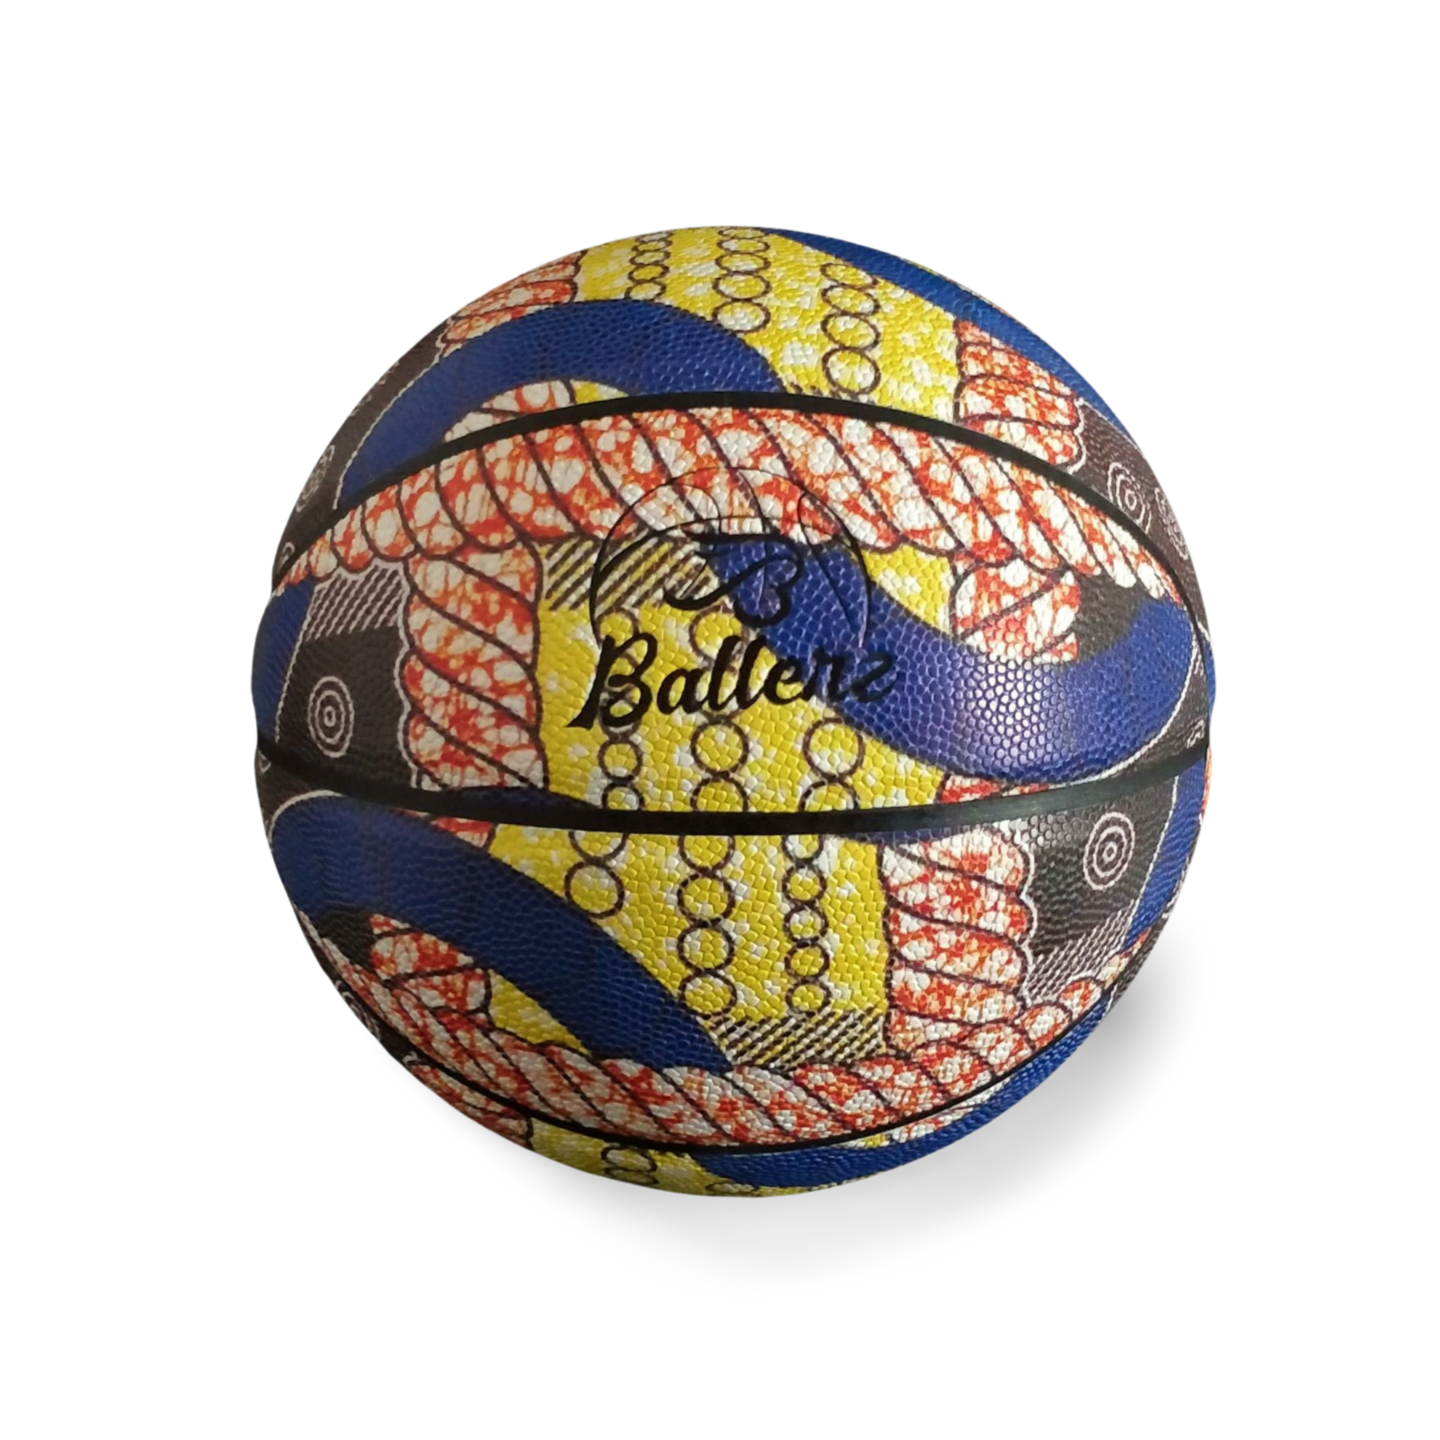 Ballon de basket avec un très jolie imprimé wax